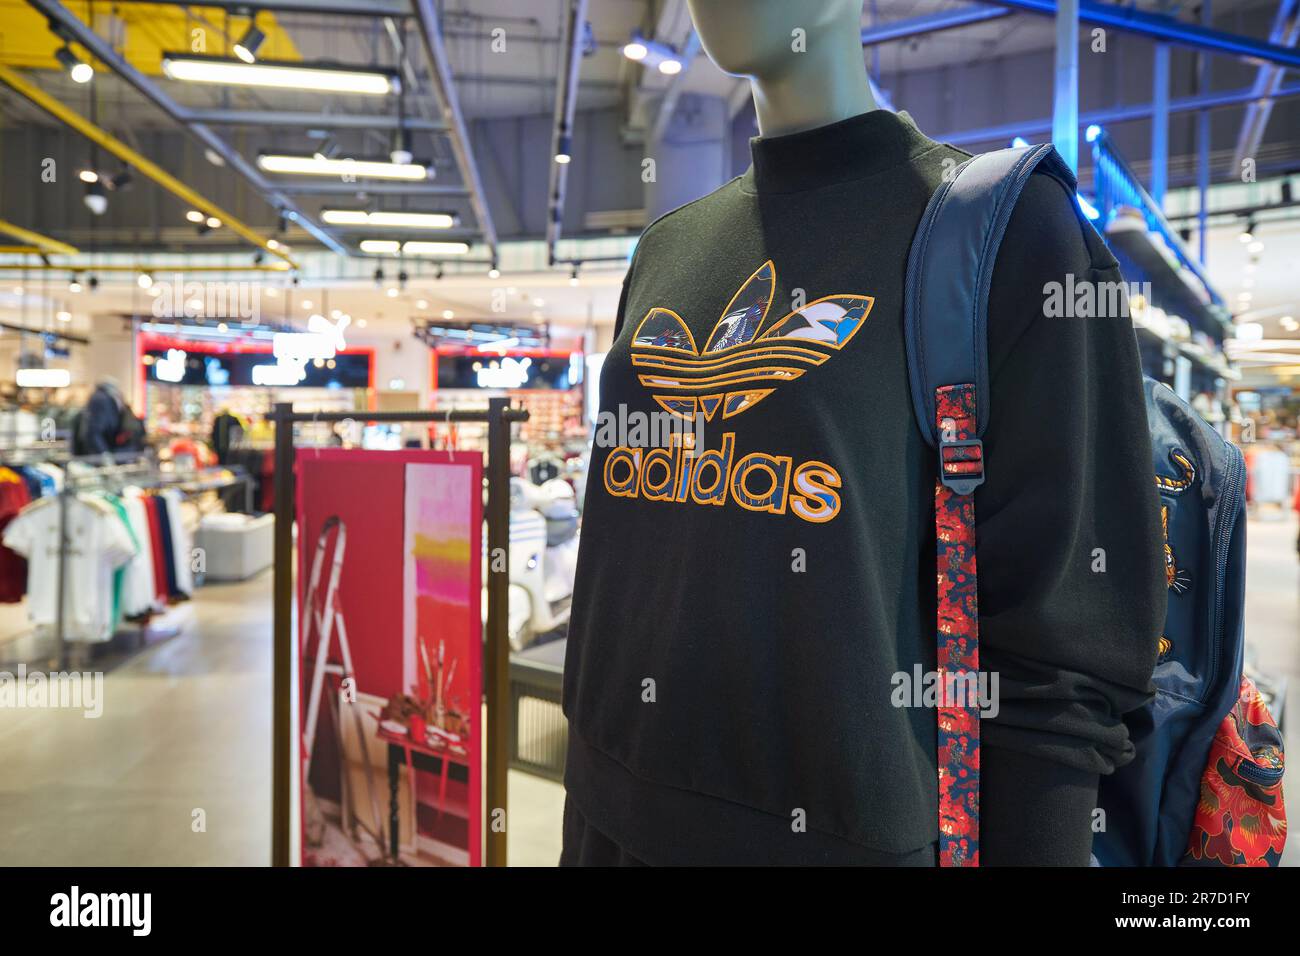 BANGKOK, THAILAND - CIRCA JANUARY, 2020: Adidas apparel displayed at Siam  Paragon shopping mall in Bangkok Stock Photo - Alamy